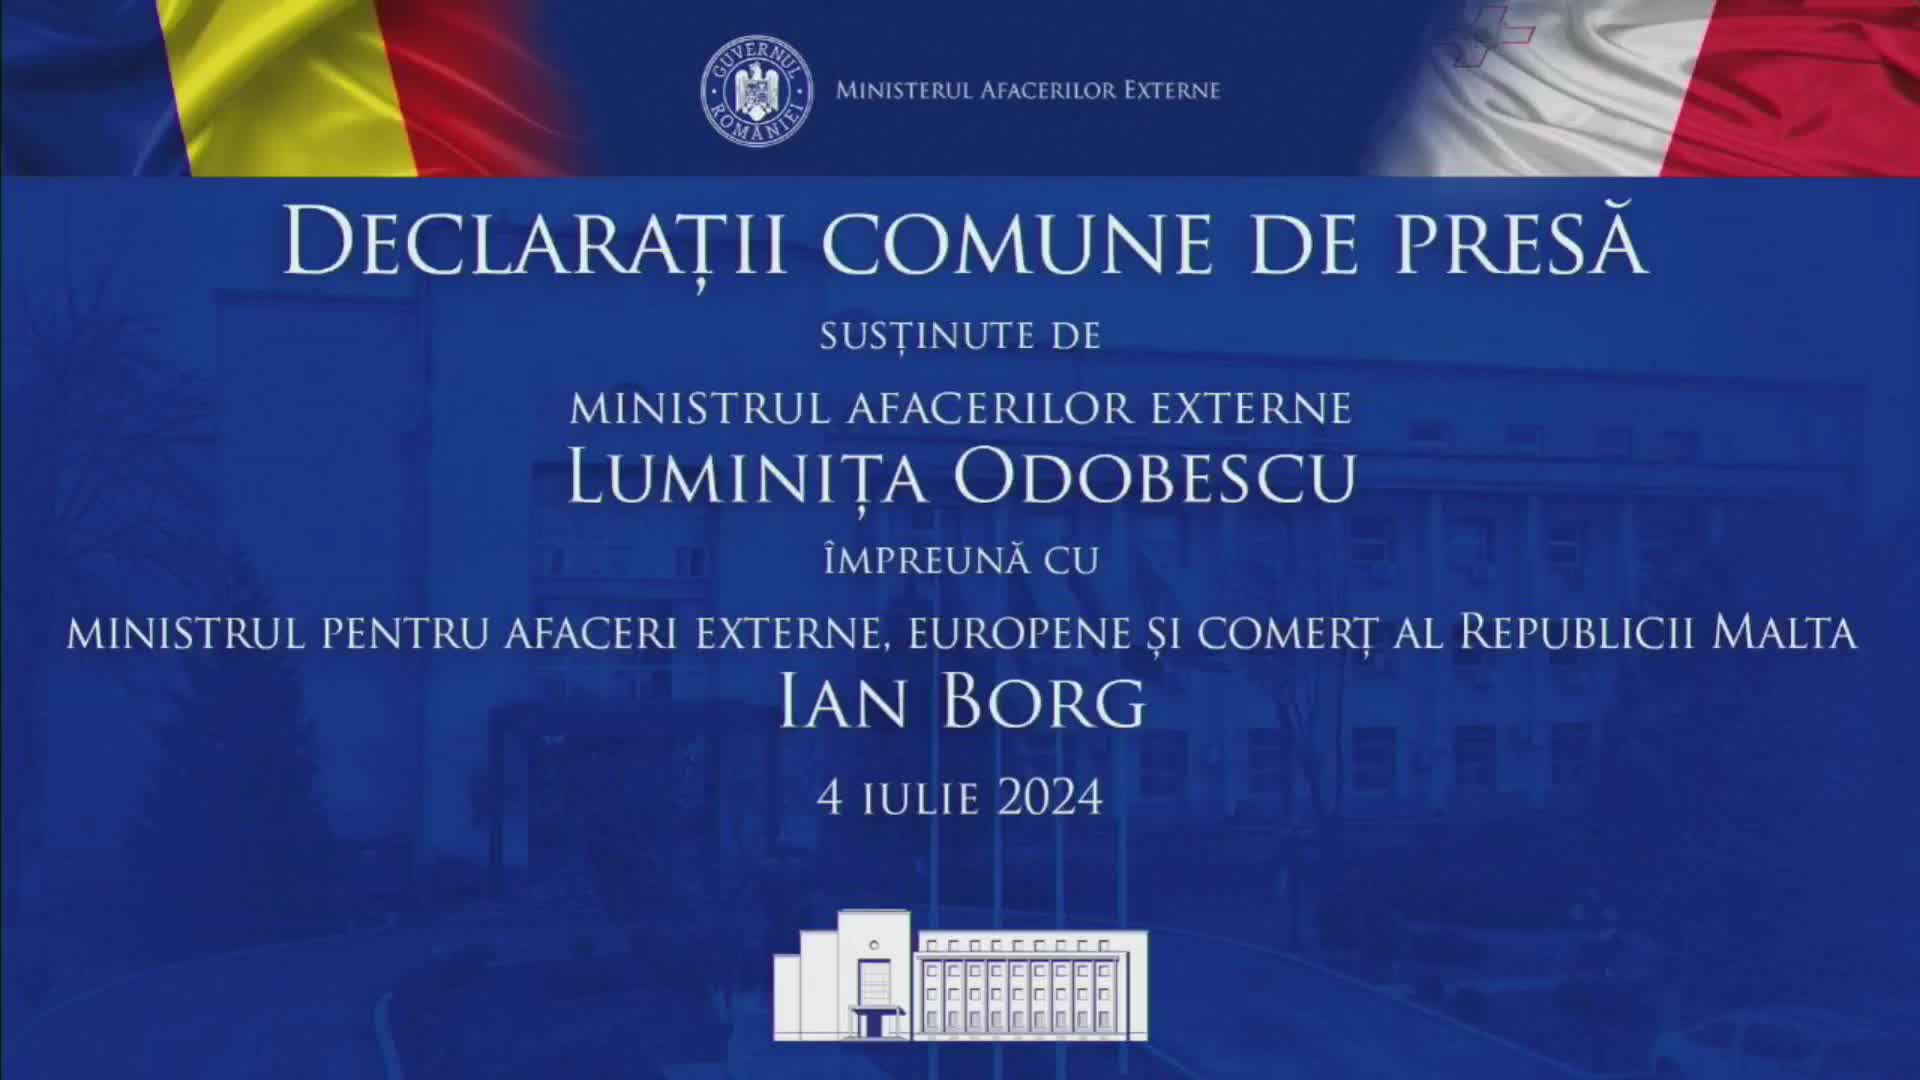 Declarații comune de presă susținute de Ministrul Afacerilor Externe al României, Luminița Odobescu și Ministrul pentru Afaceri Externe, Europene și Comerț al Republicii Malta, Ian Borg